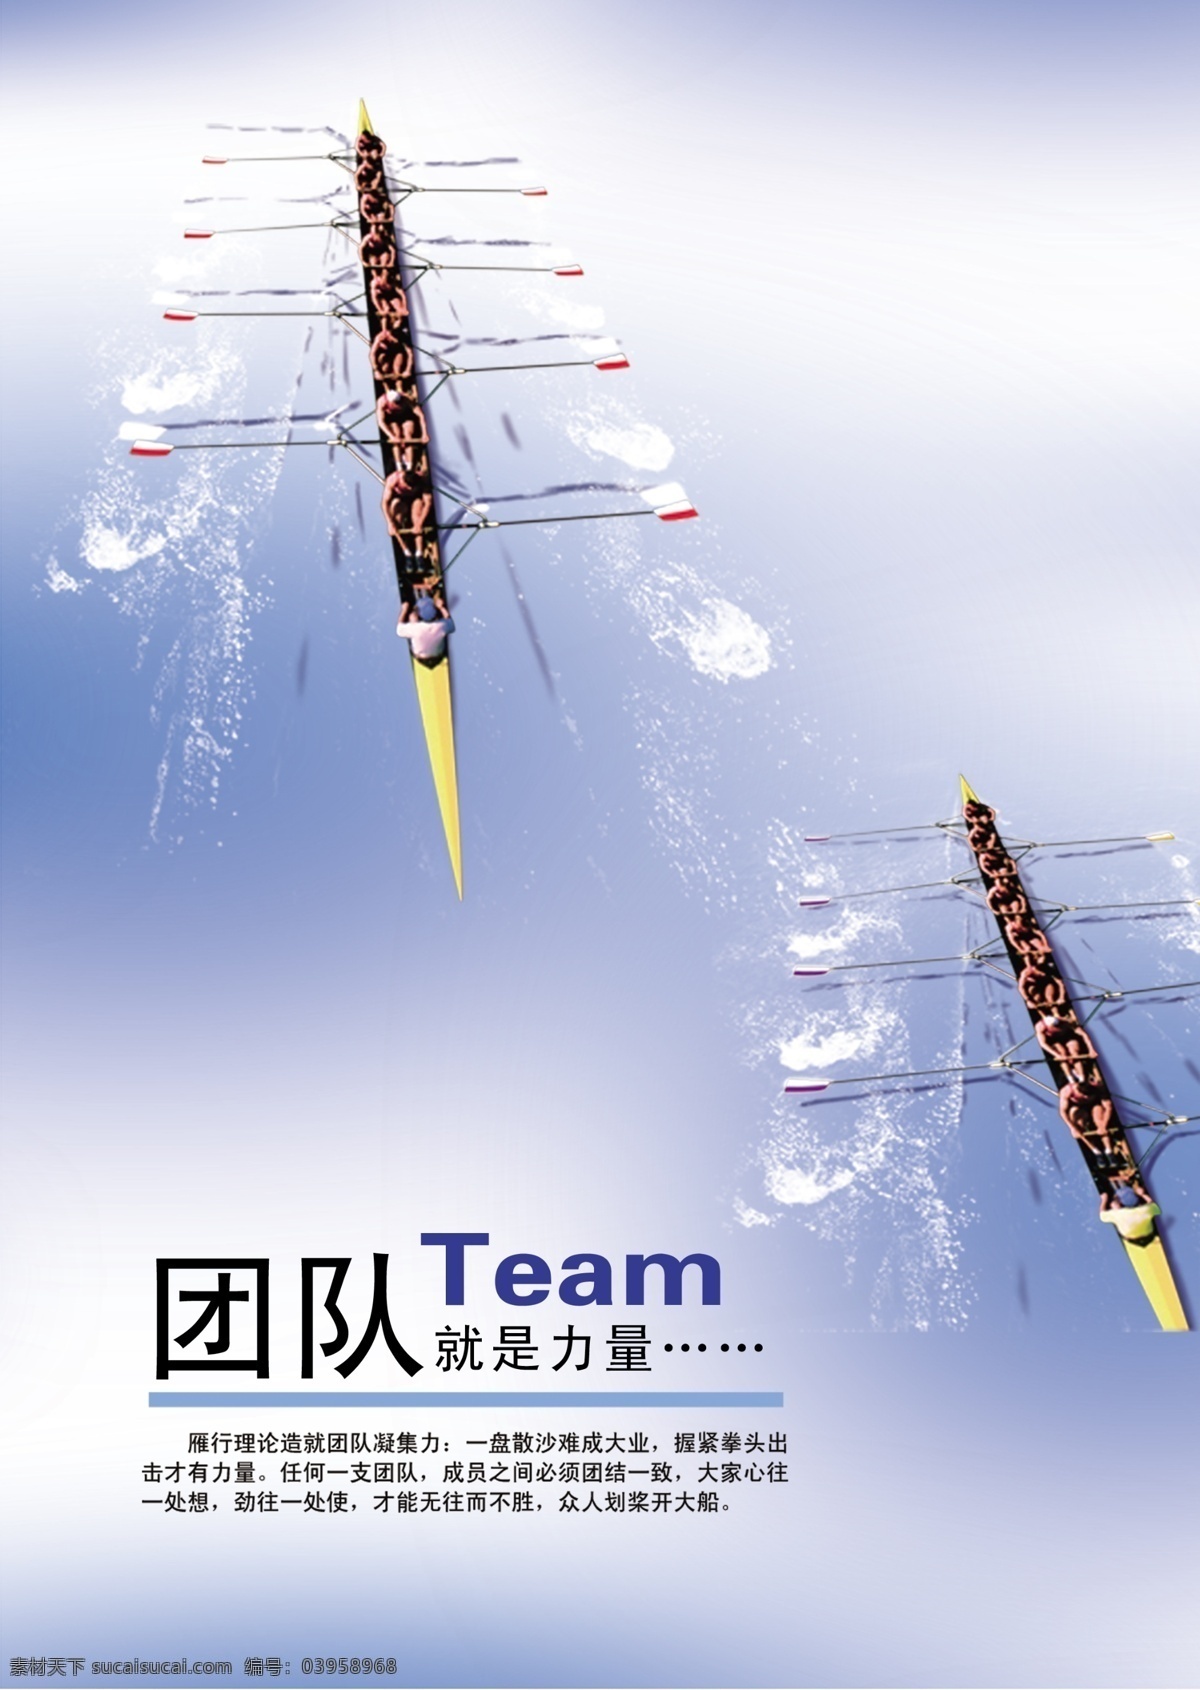 团队 team 团结就是力量 划船 龙舟 赛龙舟 蓝色背景 团队就是力量 比赛 素材图库 源文件